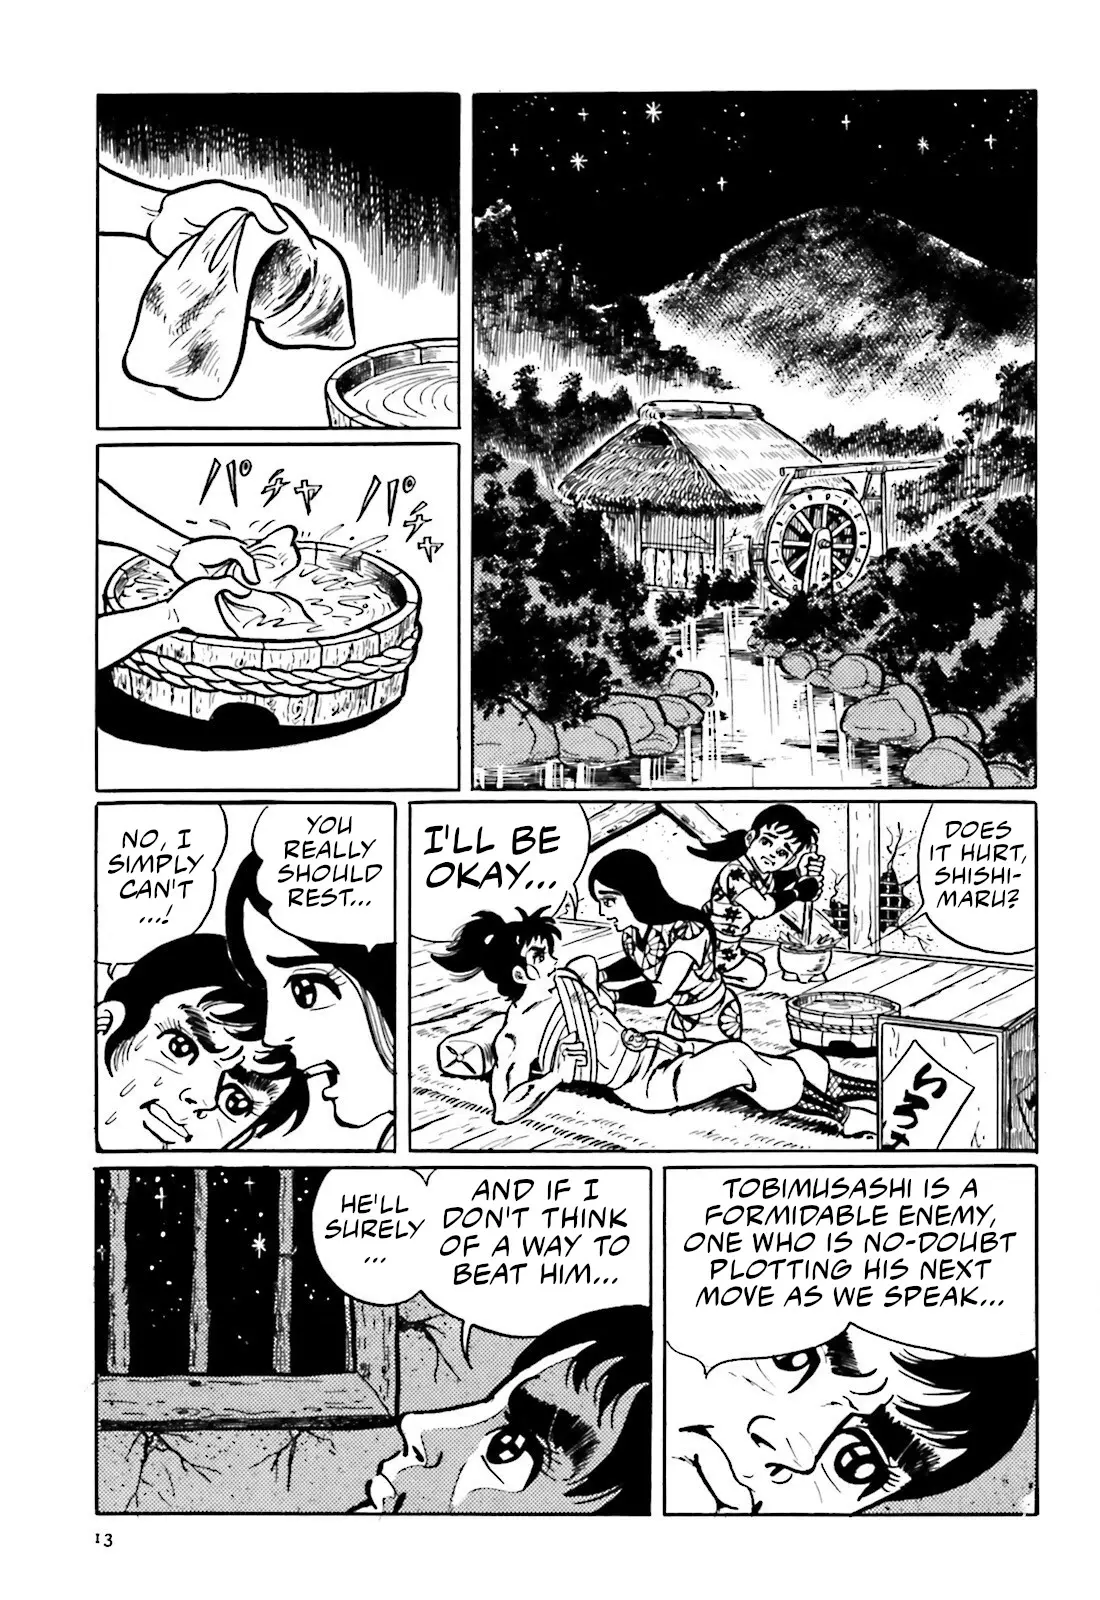 The Vigilant Lionmaru - 8 page 11-73ce02cf